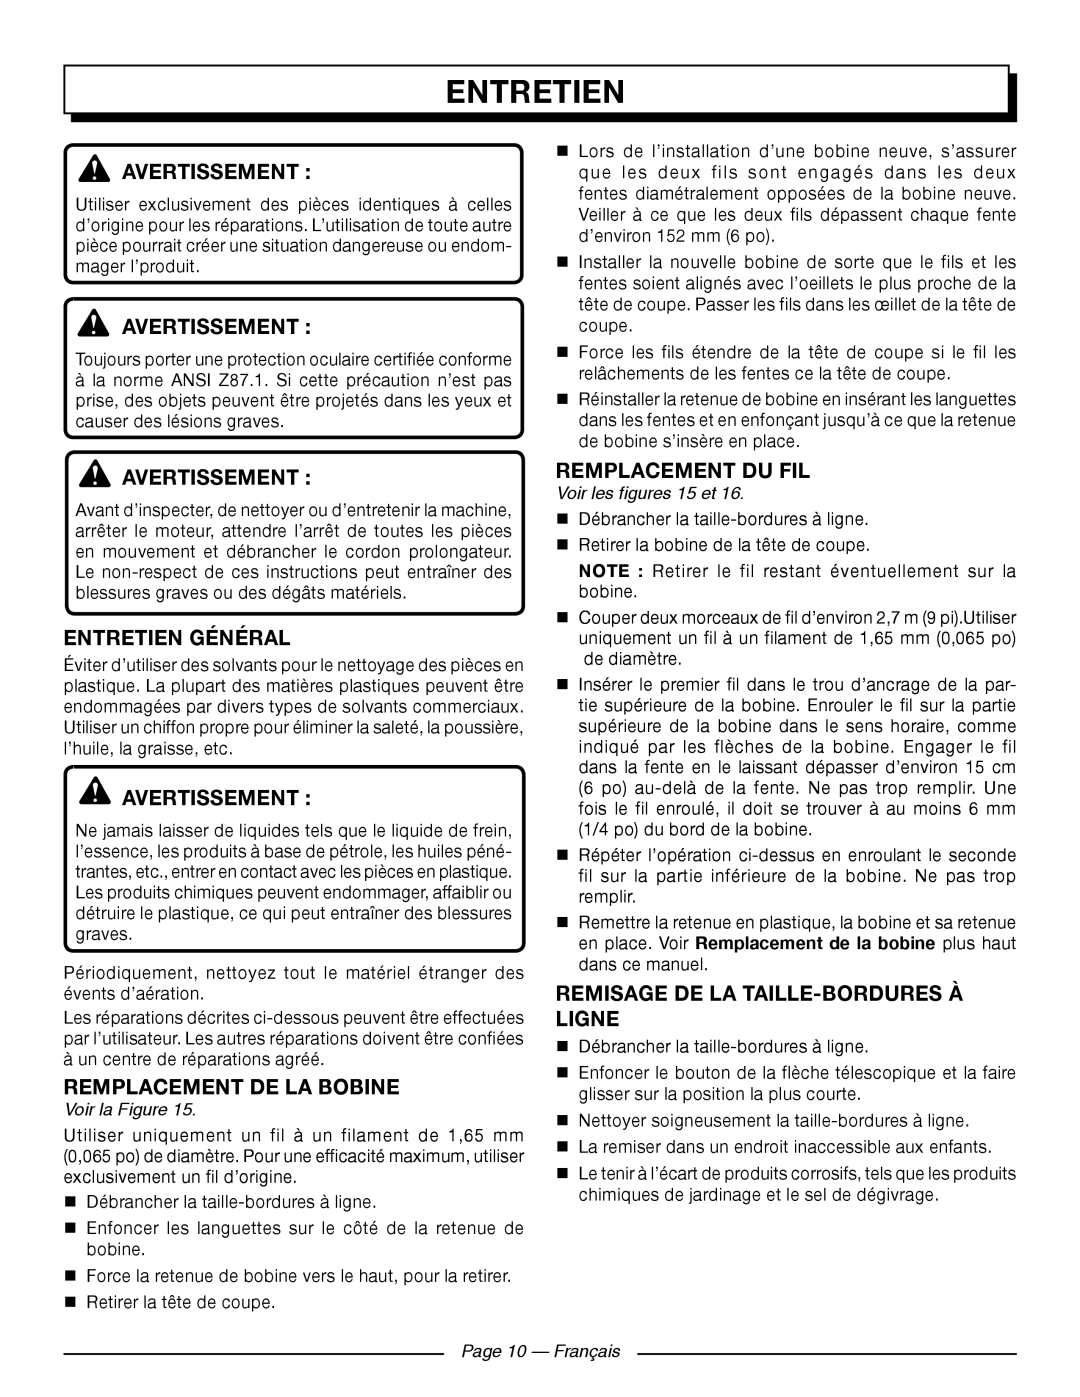 Homelite UT41121 Entretien Général, Remplacement De La Bobine, Remplacement Du Fil, Voir la Figure, Page 10 - Français 